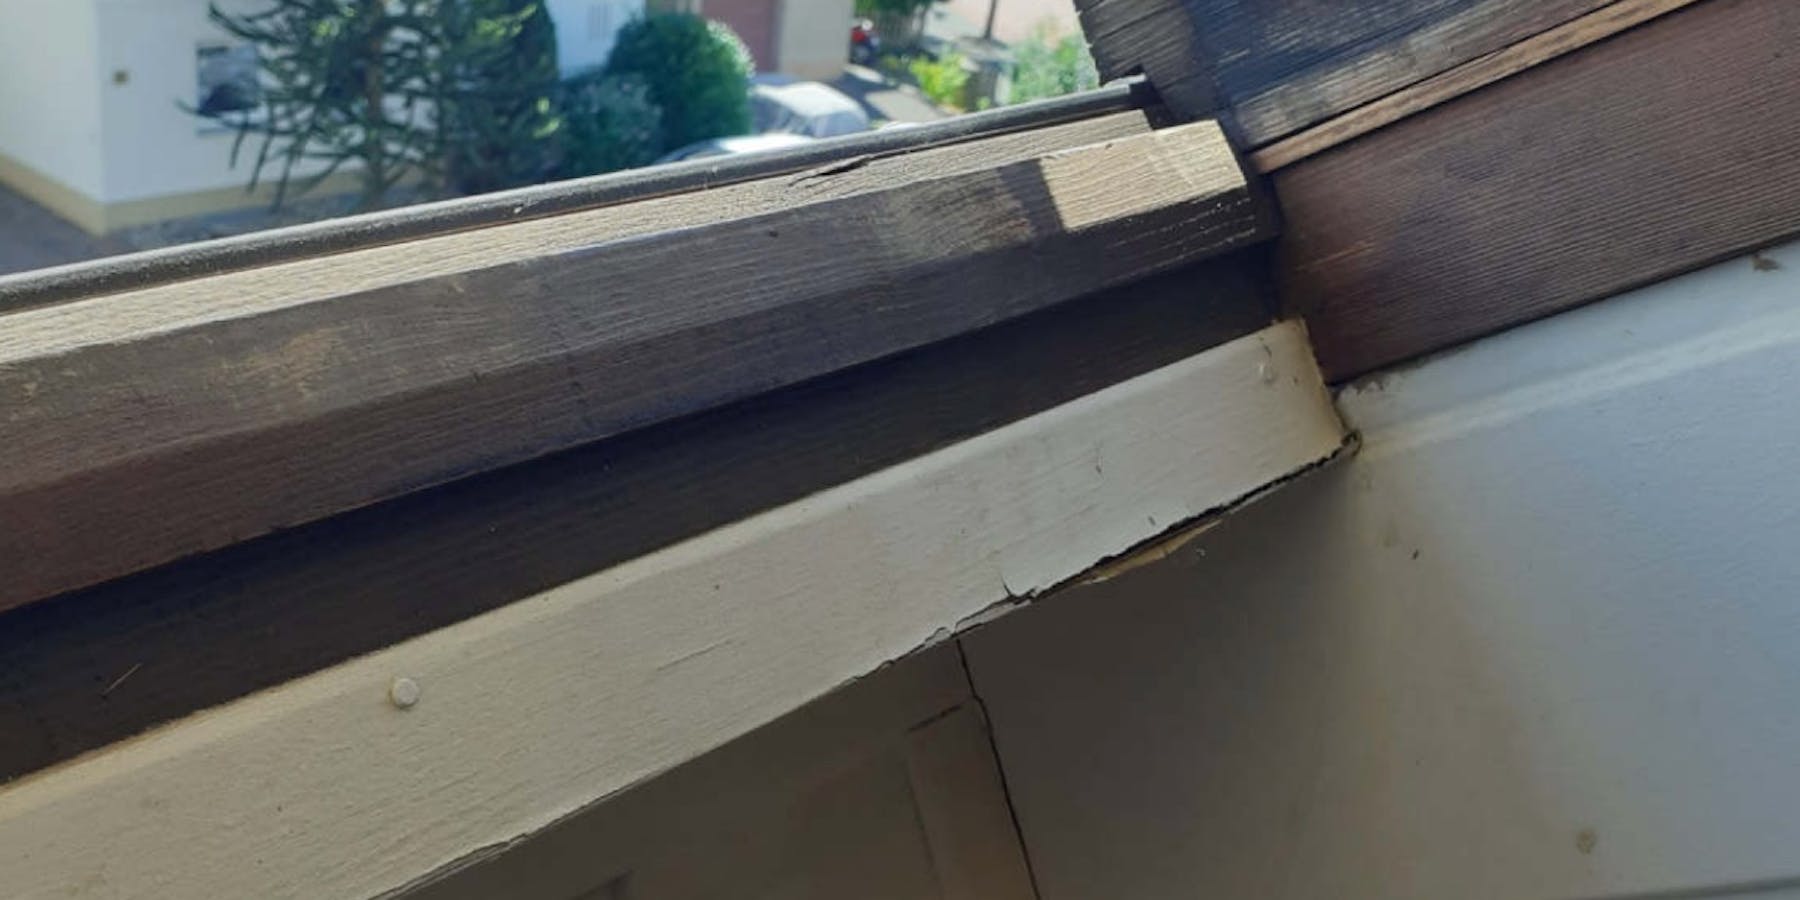 Beschädigter Dachfenster Rahmen – Reparatur nicht möglich